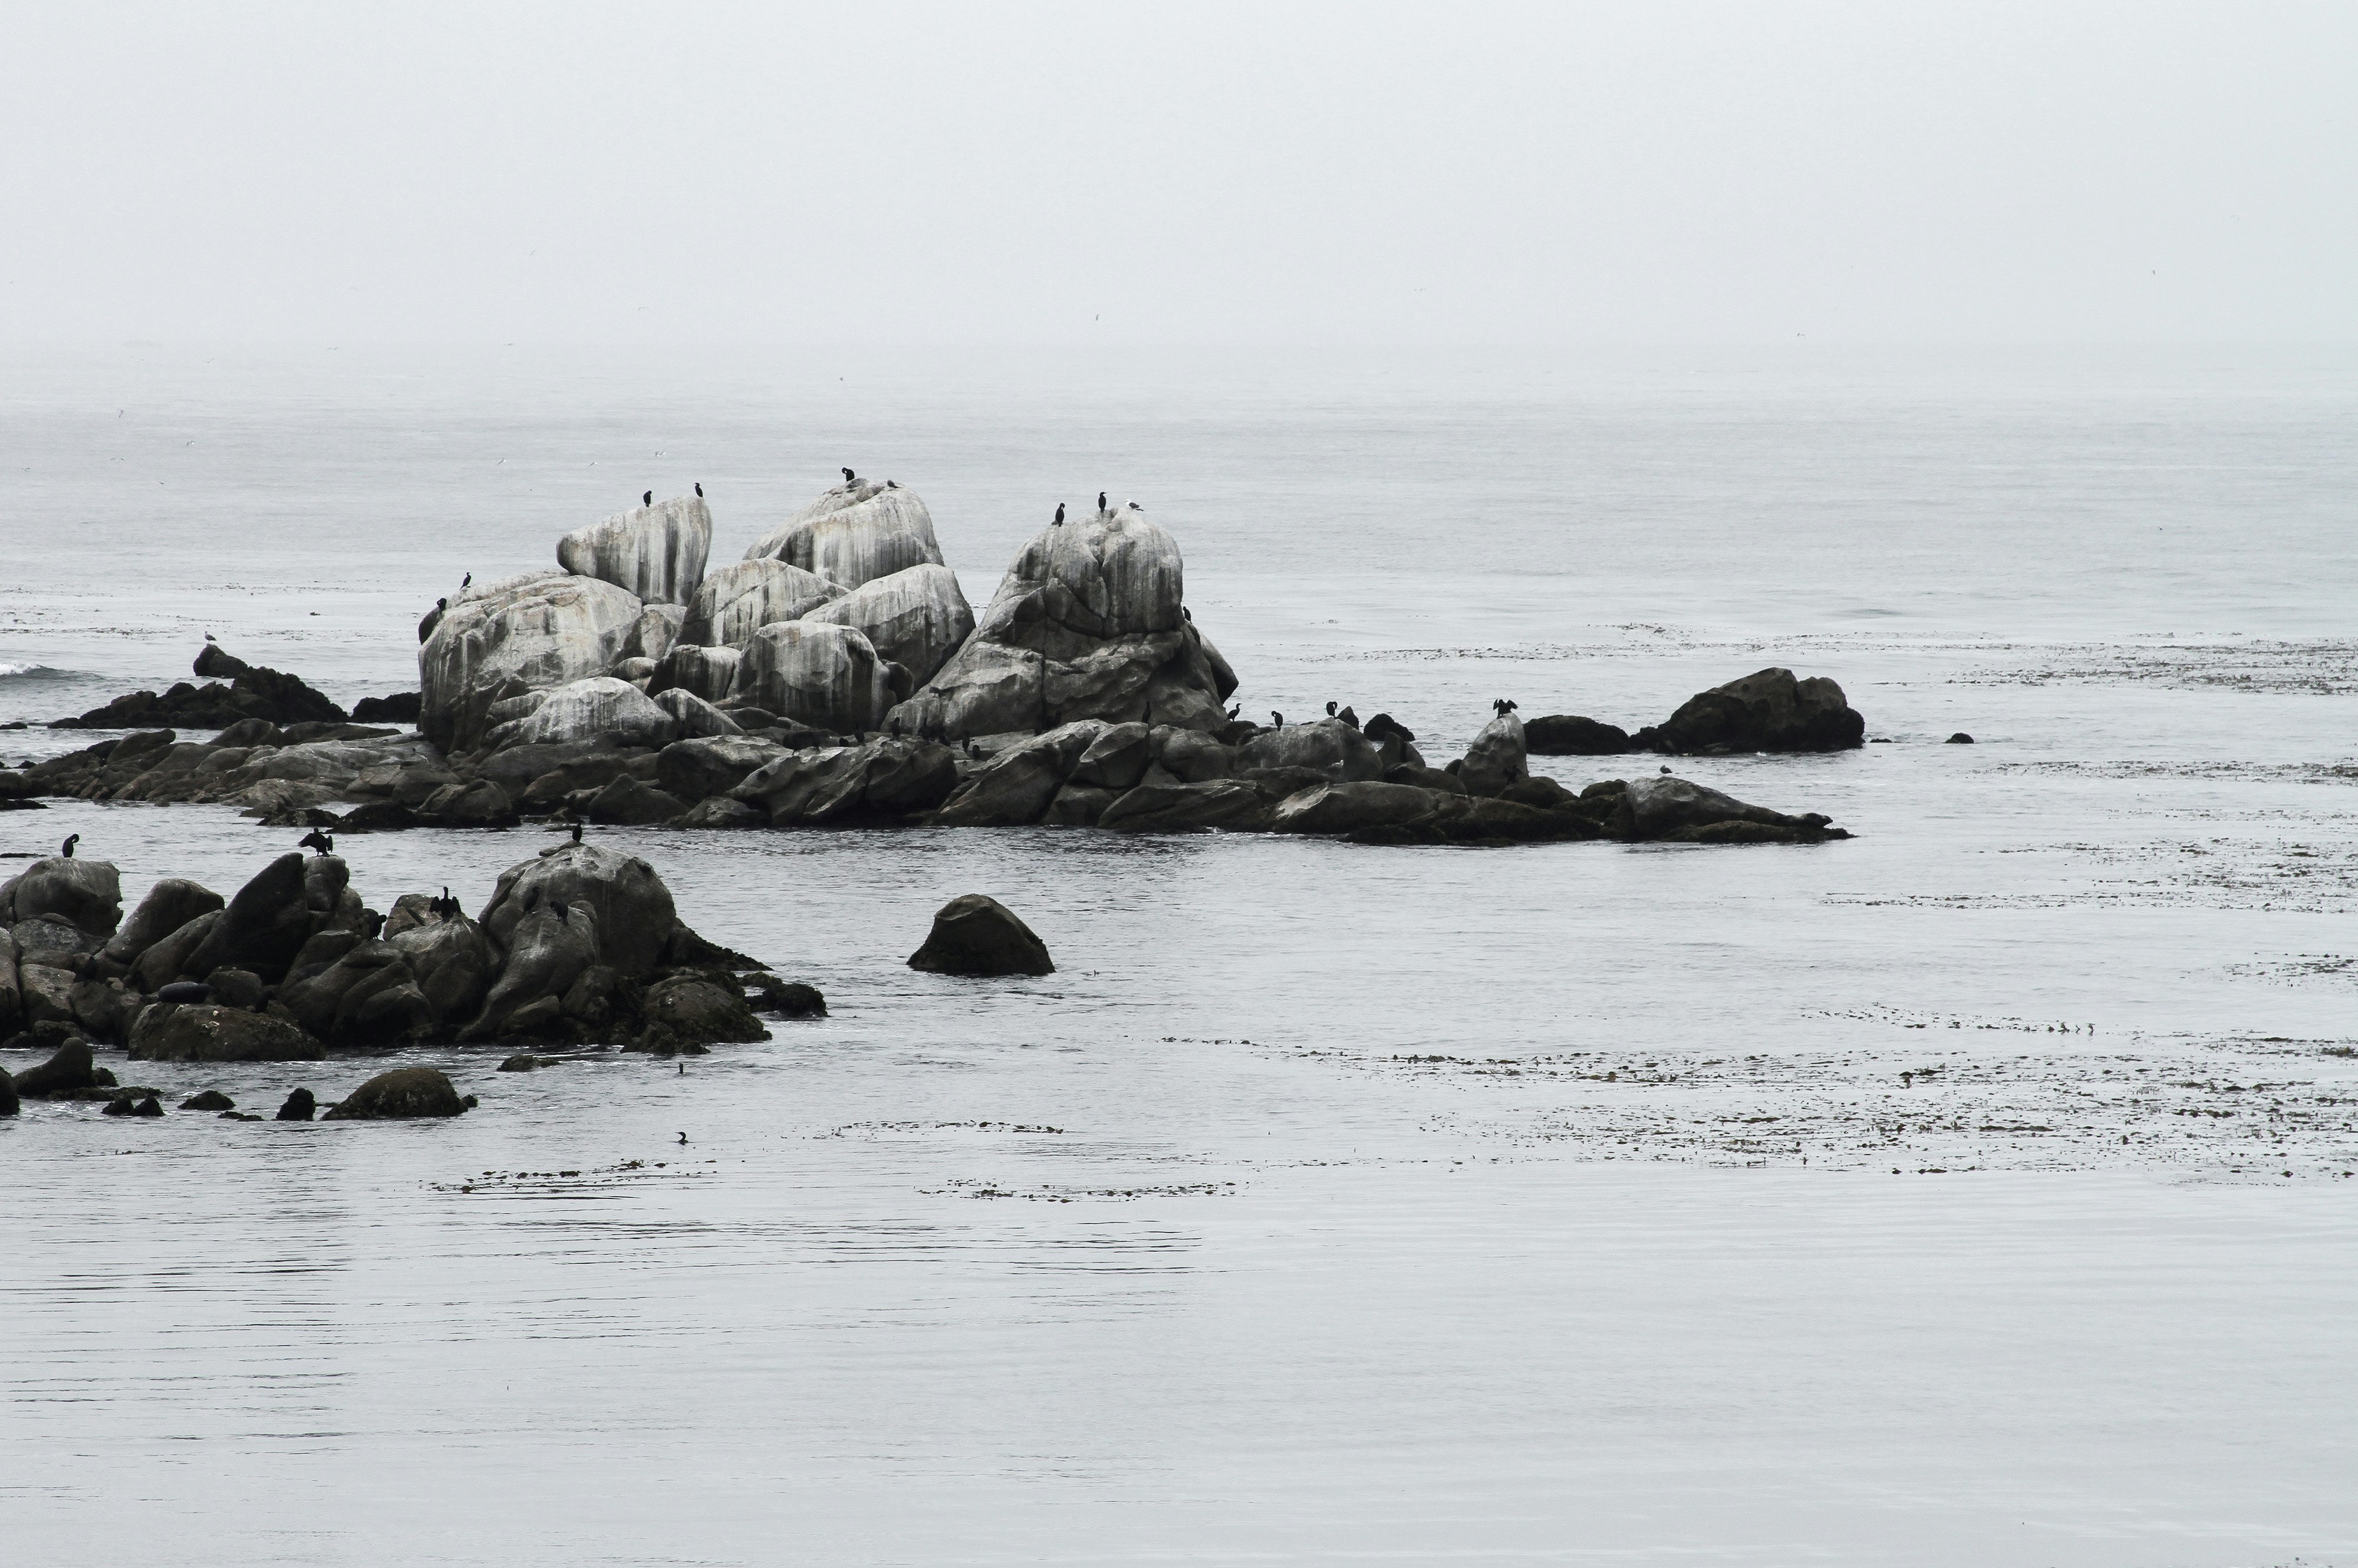 landscape photography of seashore rocks